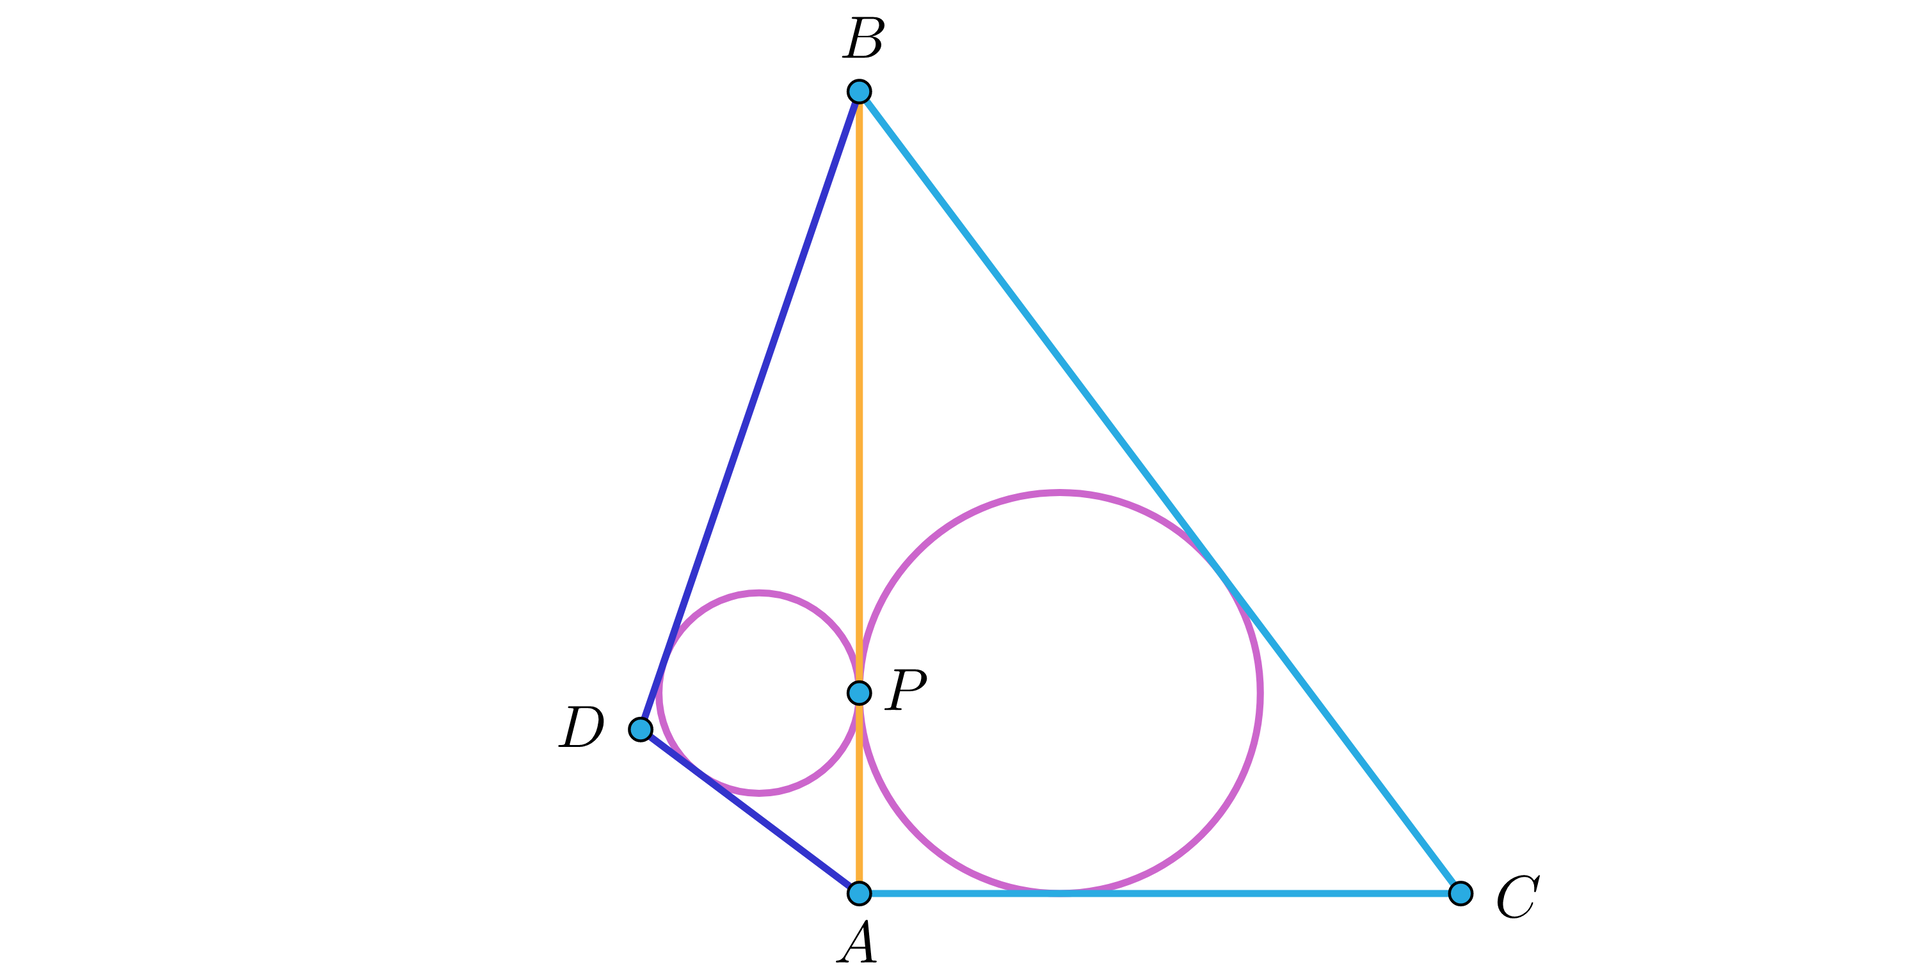 Grafika przedstawia trójkąty ABD i CBA które mają wspólne ramię AB . W oba trójkąty wpisano okręgi które stykają się z ramieniem AB w punkcie P.